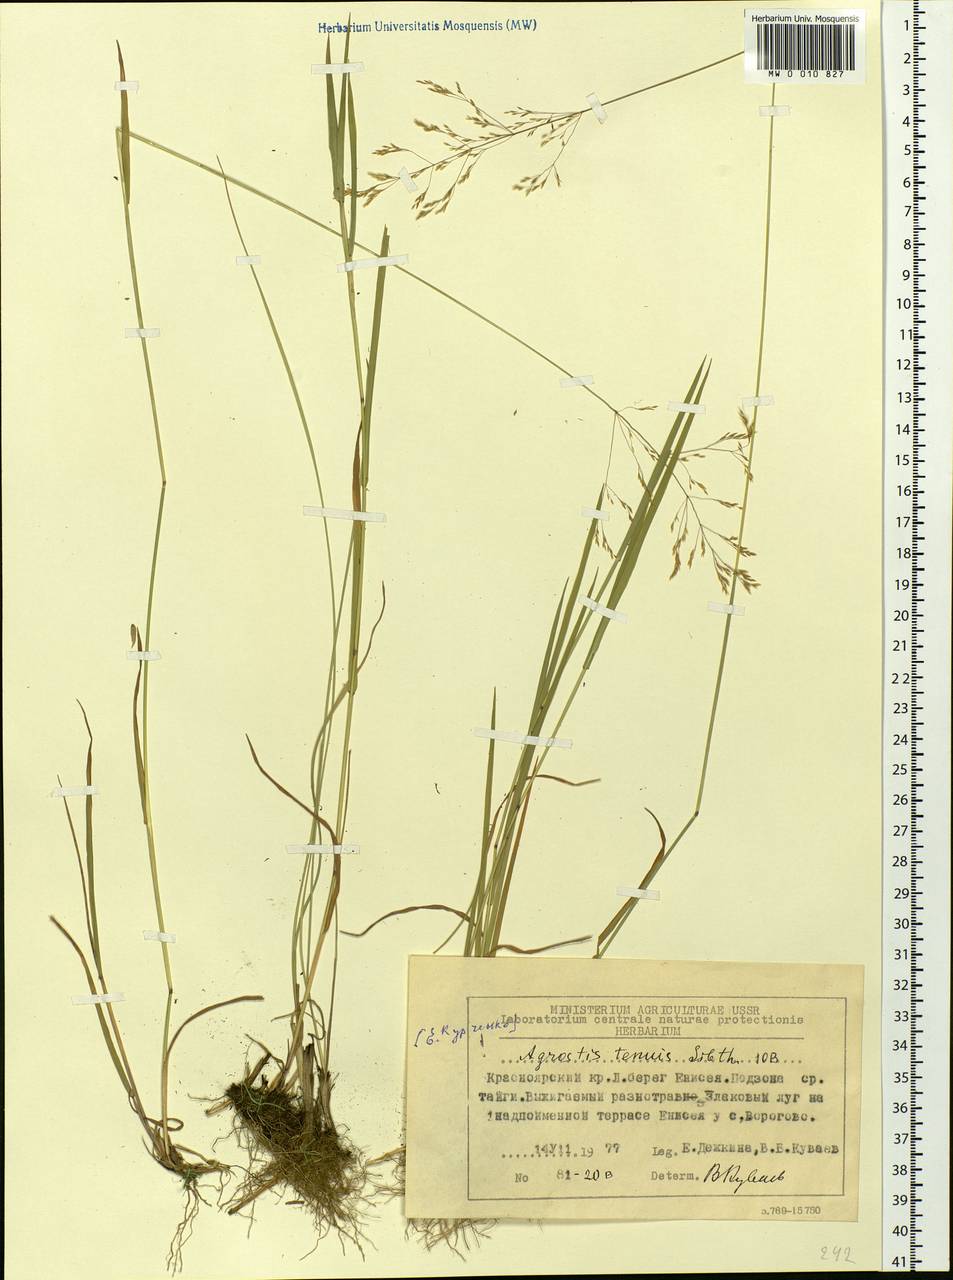 Agrostis capillaris L., Siberia, Central Siberia (S3) (Russia)